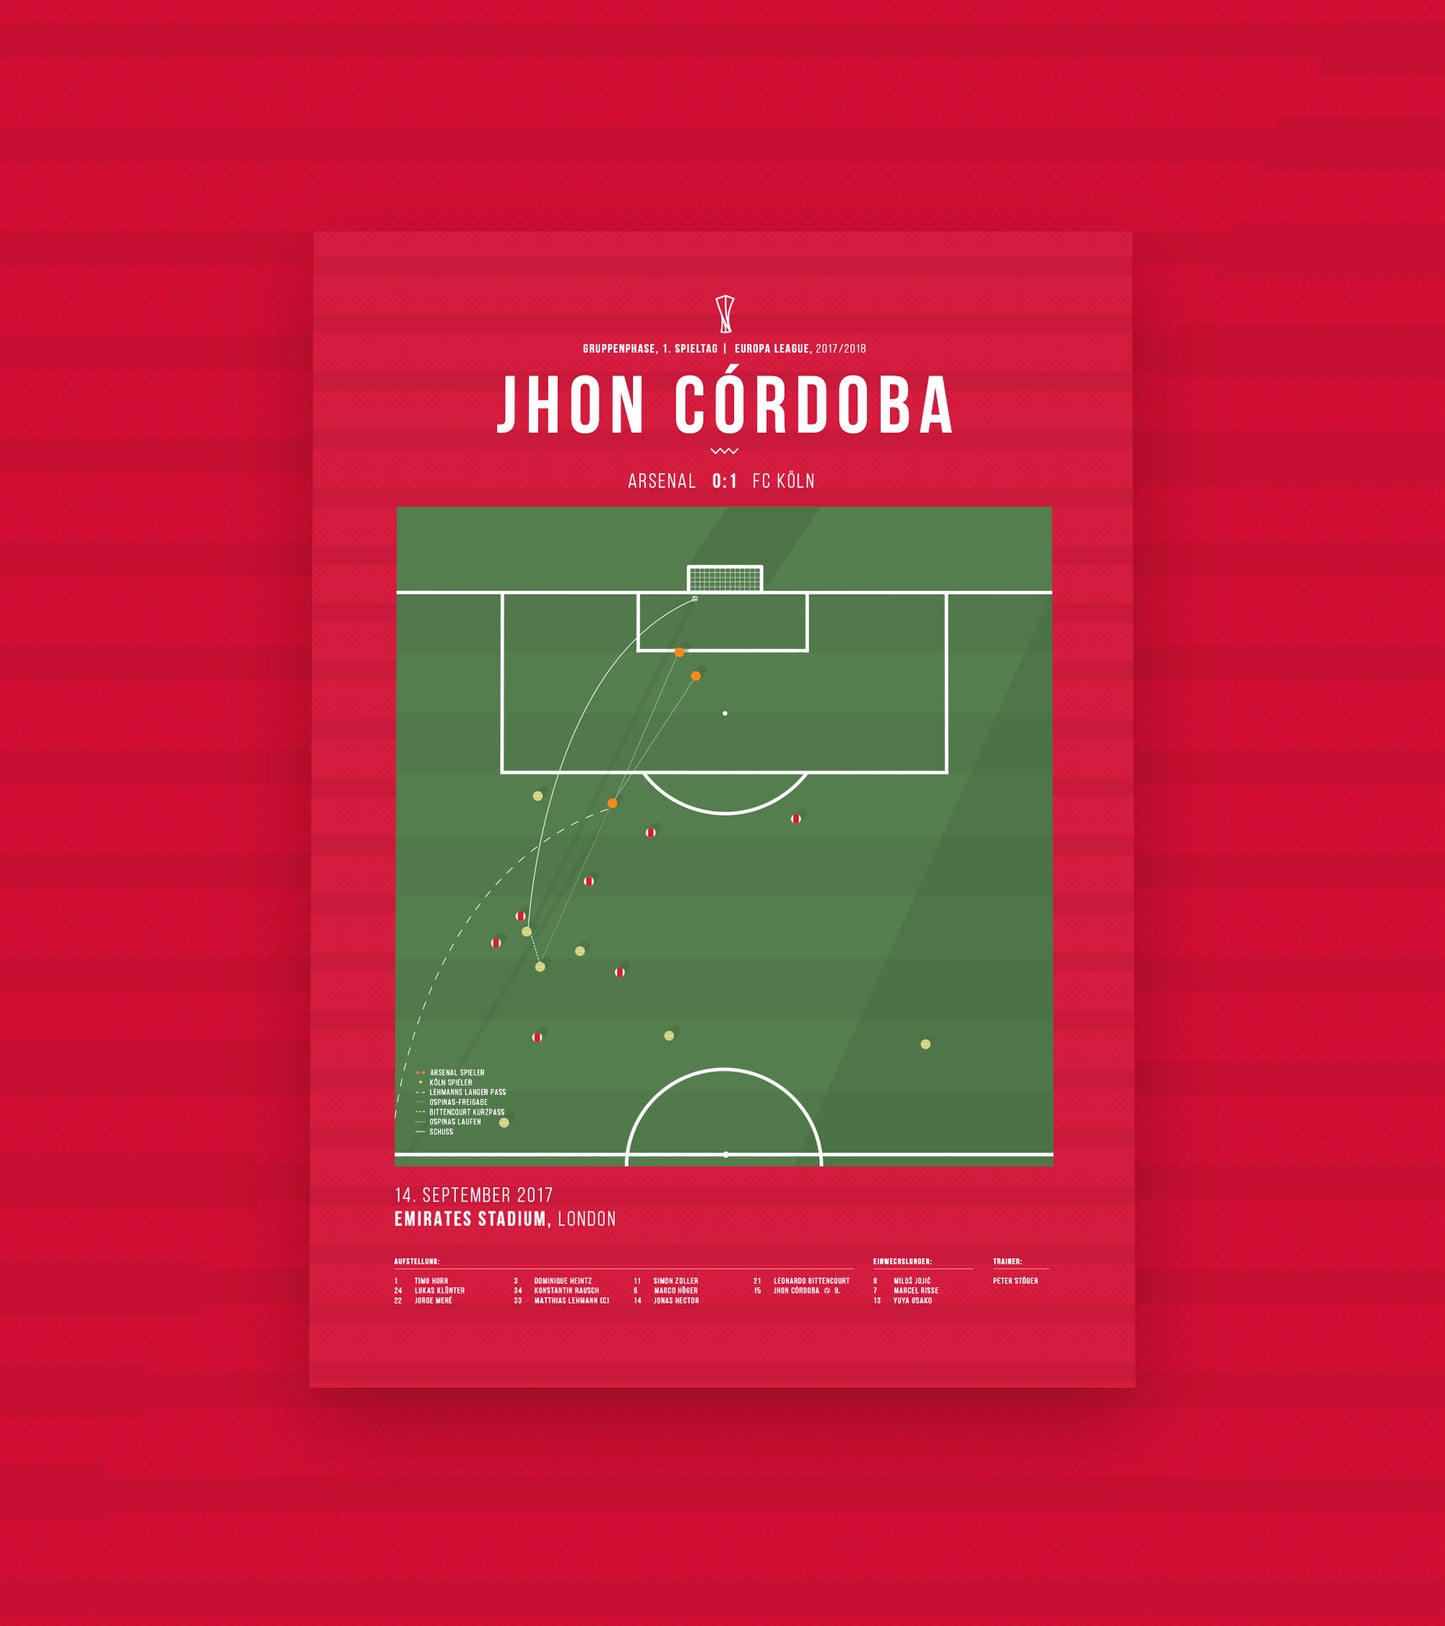 Jhon Córdoba vs Arsenal